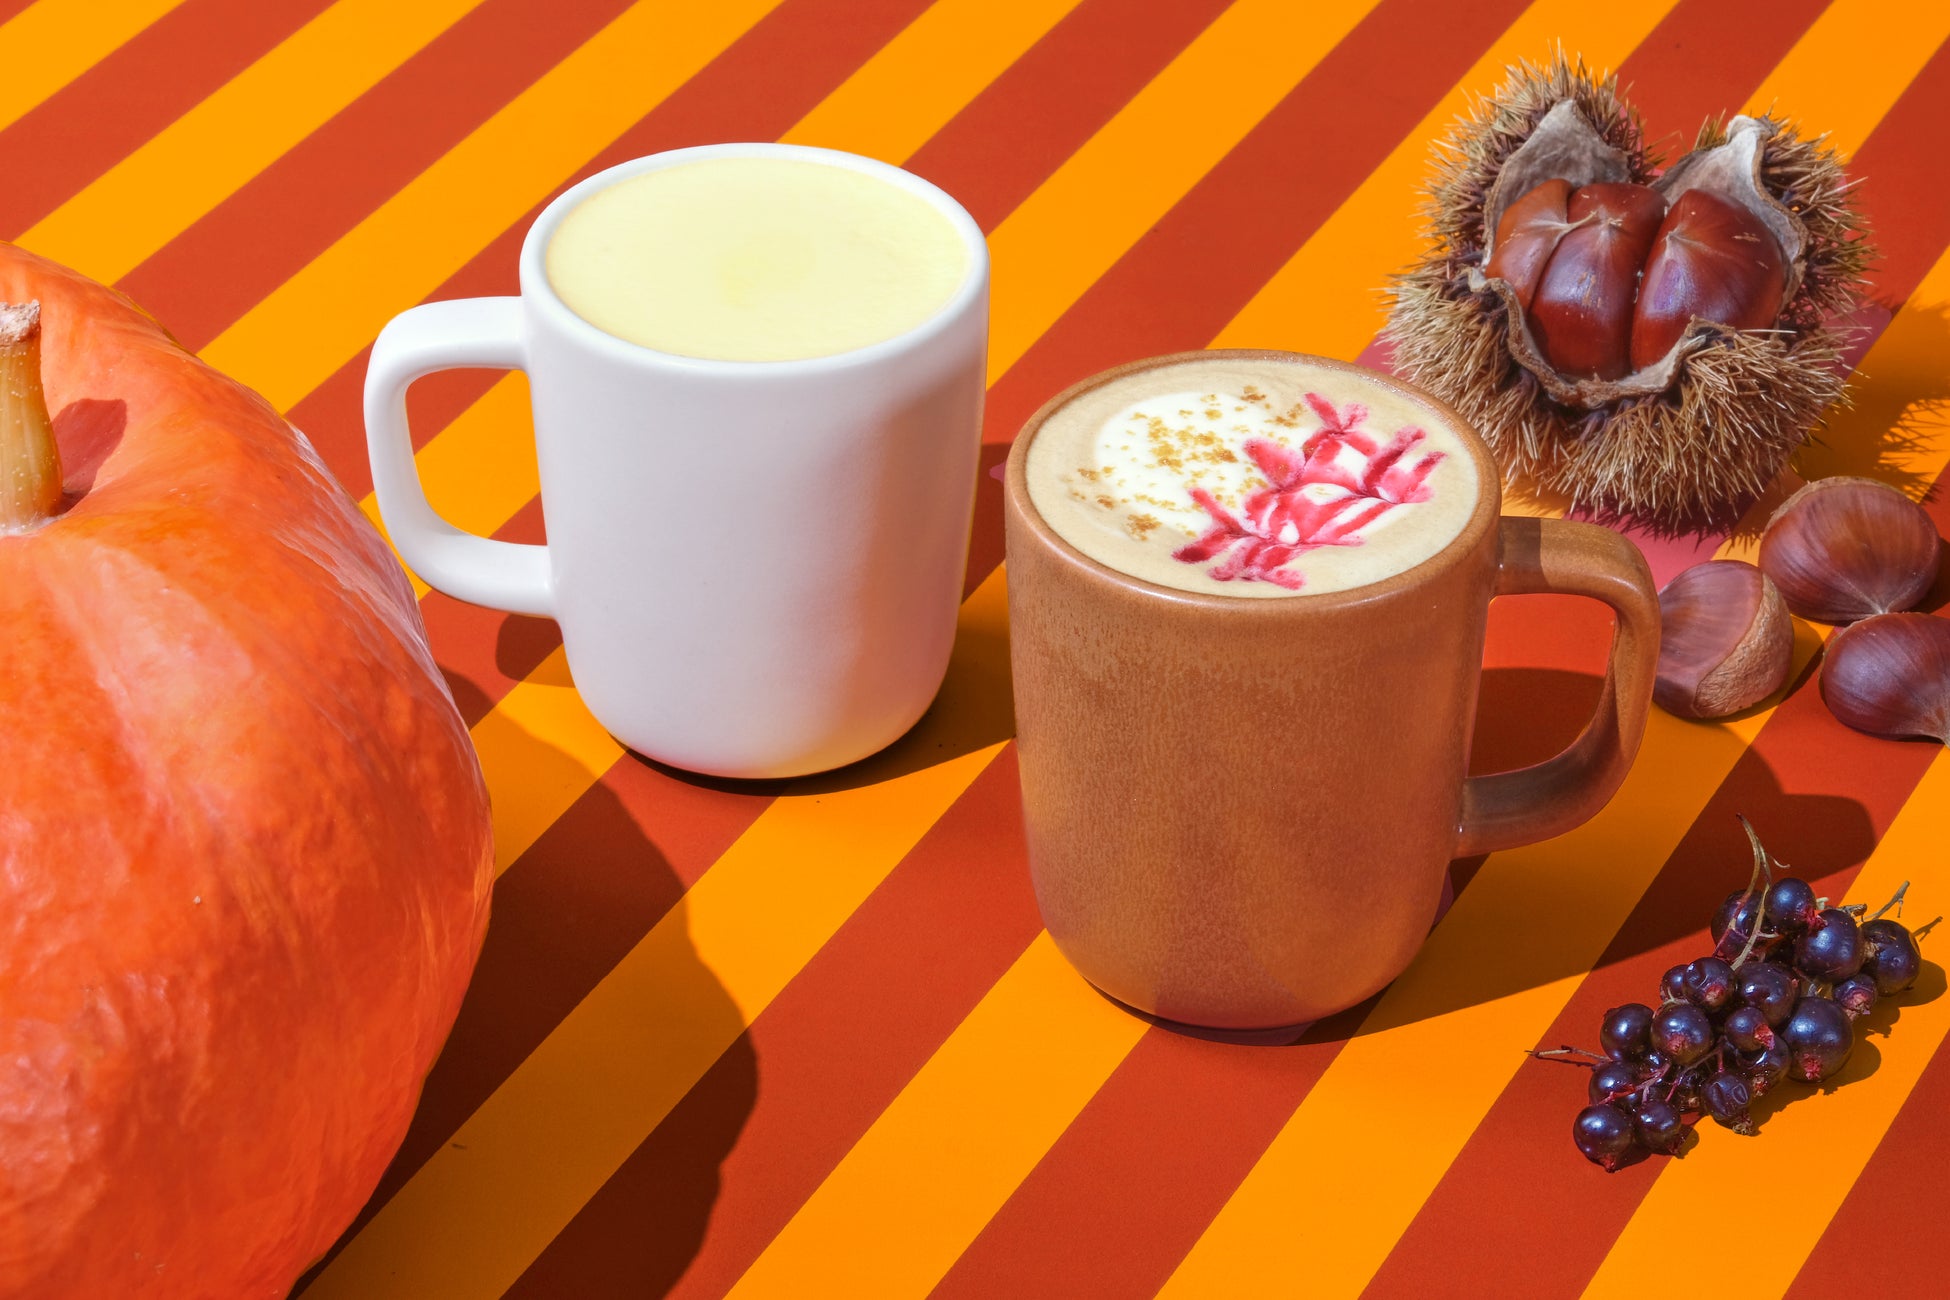 秋の味覚を、色合いとともに味わえるシーズナルドリンク「かぼちゃと栗のラテ/栗かぼちゃミルク」9月26日 発売